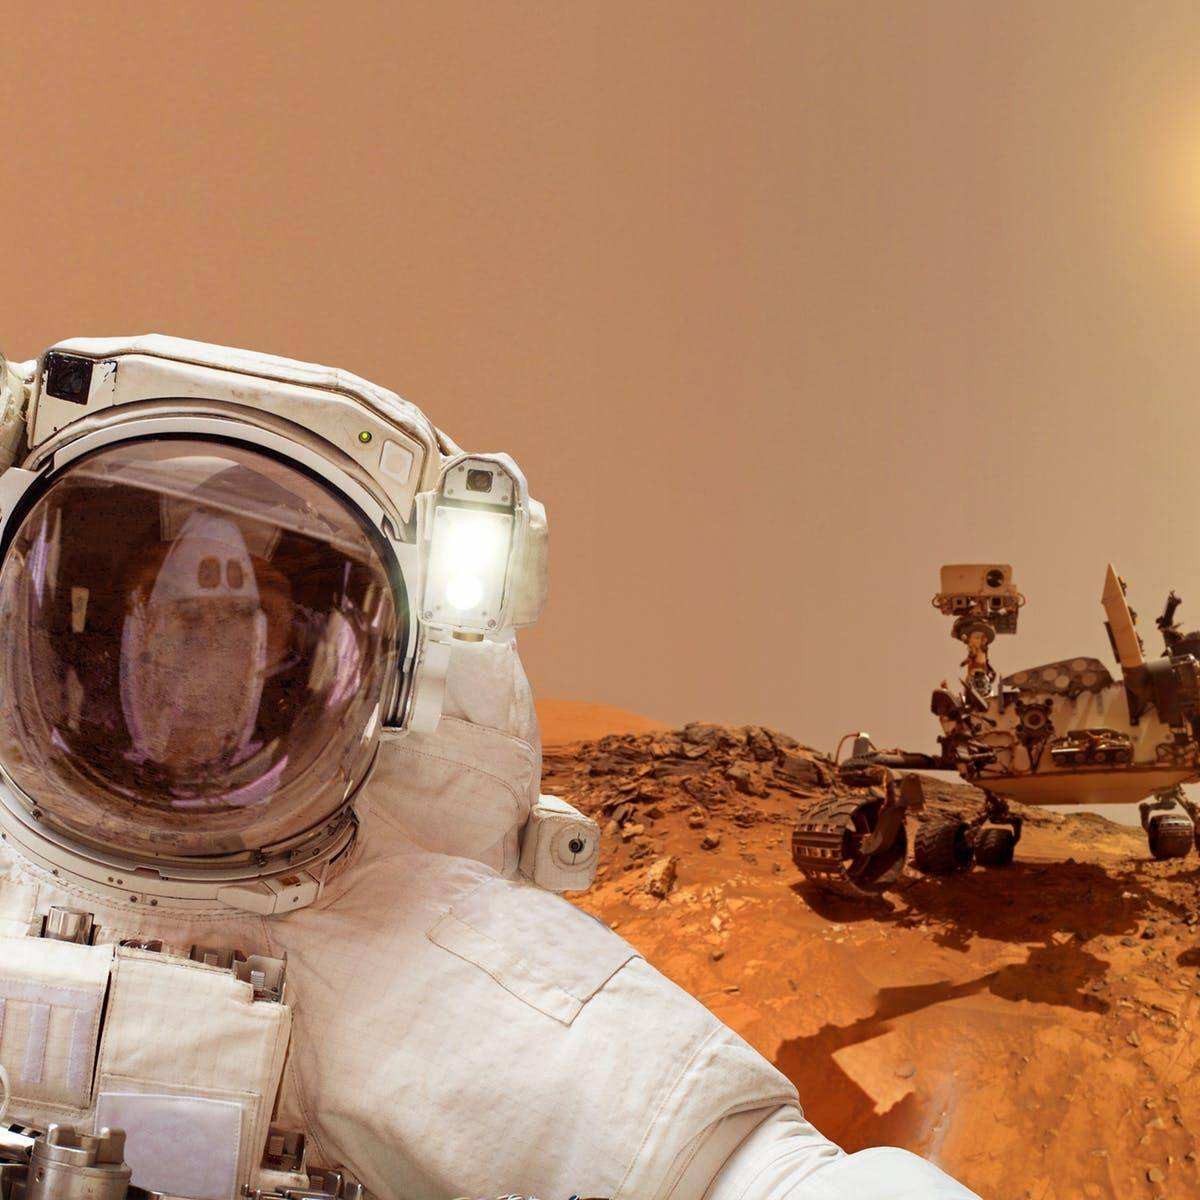 火星距离地球2亿公里,宇航员若想上火星,需要花多长时间?